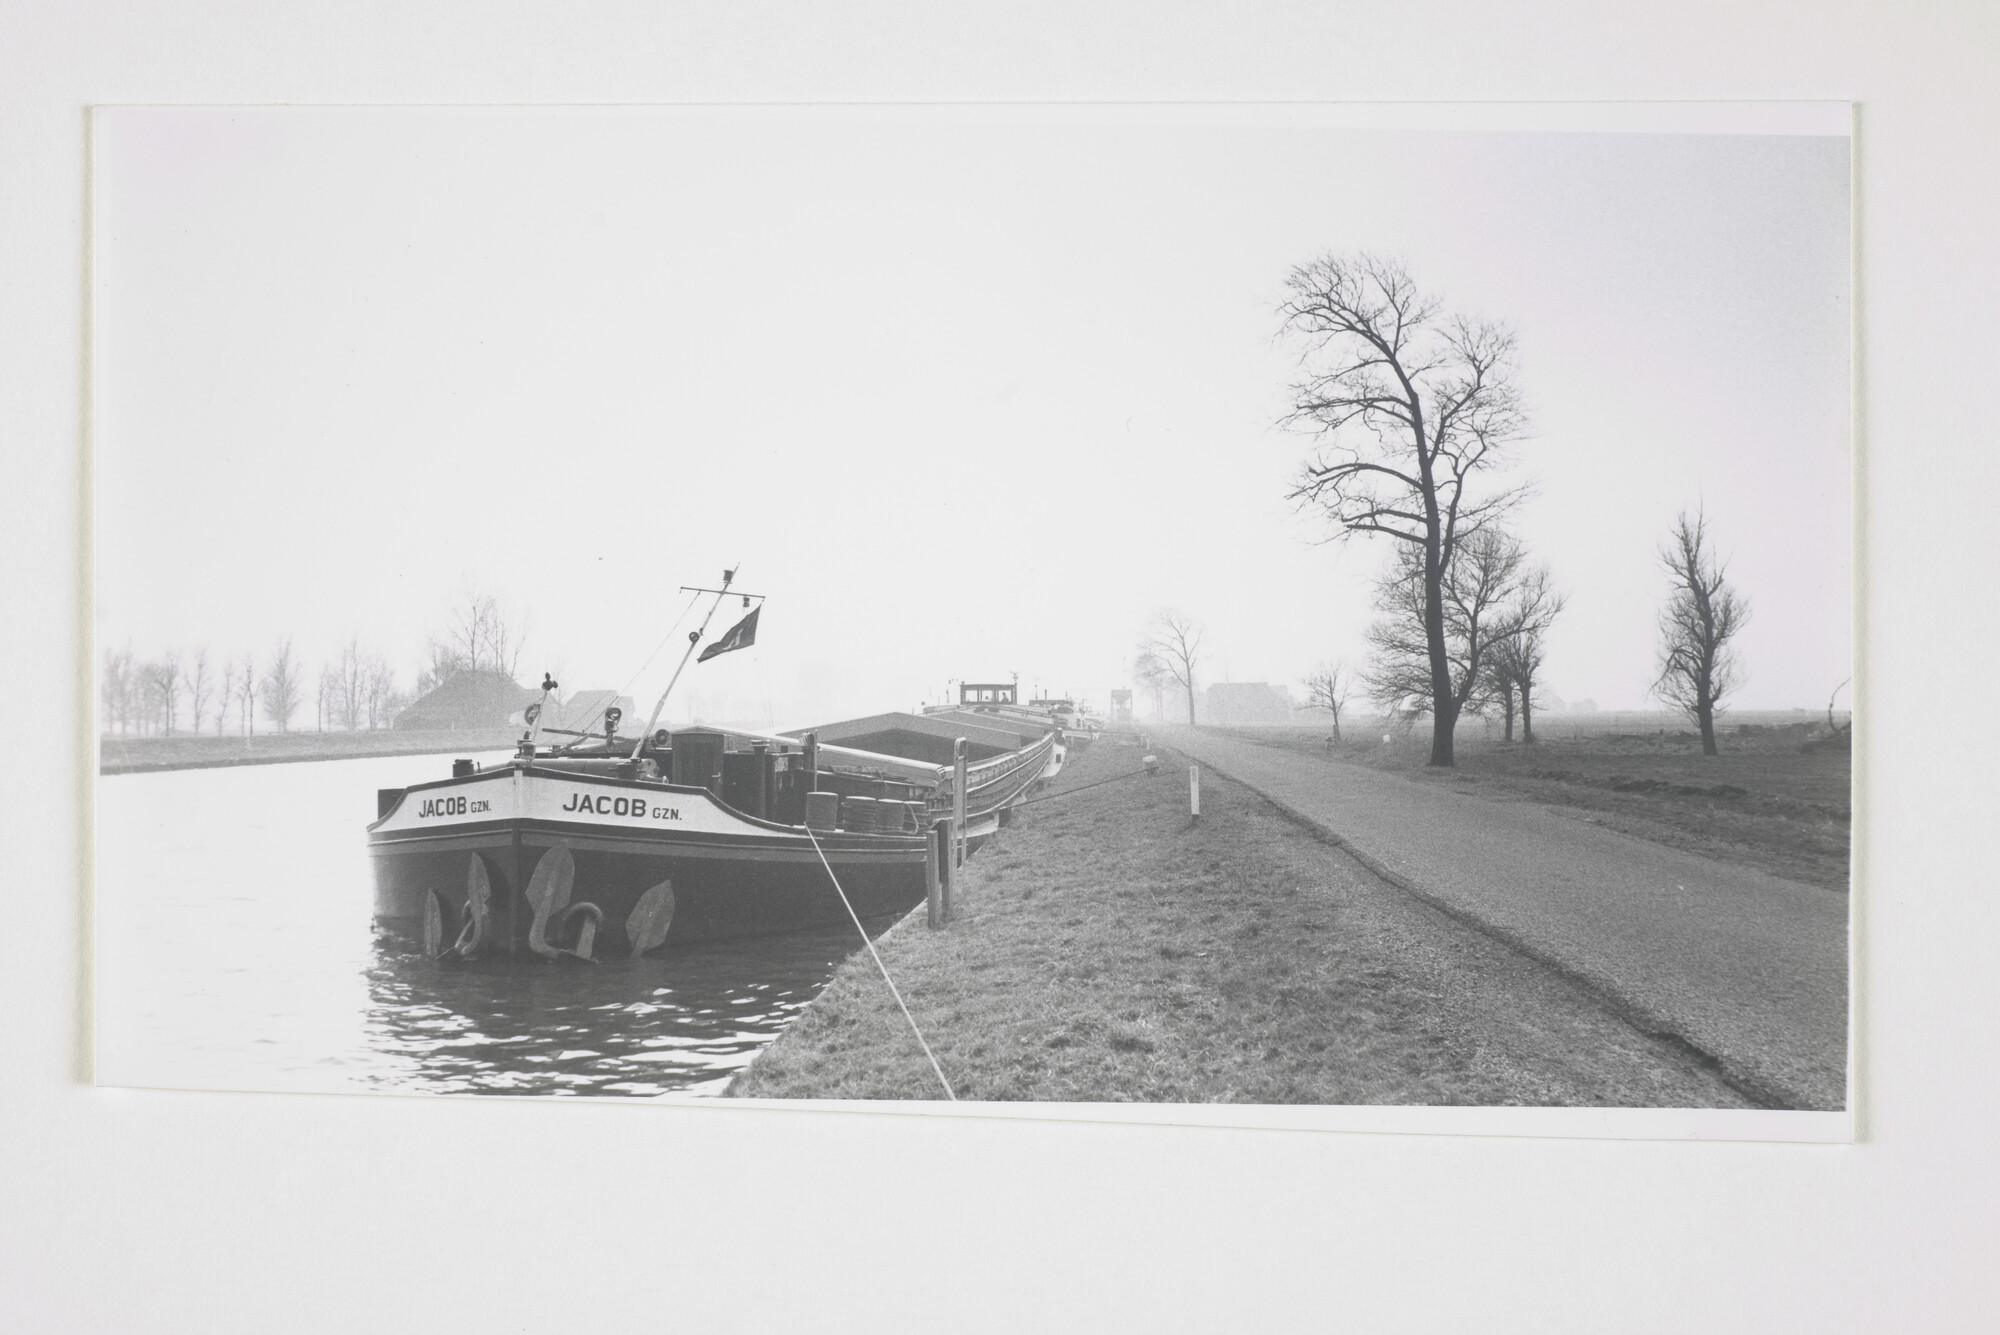 2000.1884; Het binnenvaartschip 'Jacob Gzn' ligt met andere schepen afgemeerd aan de oever van het Van Starkenborgkanaal (Groningen) [...]; foto